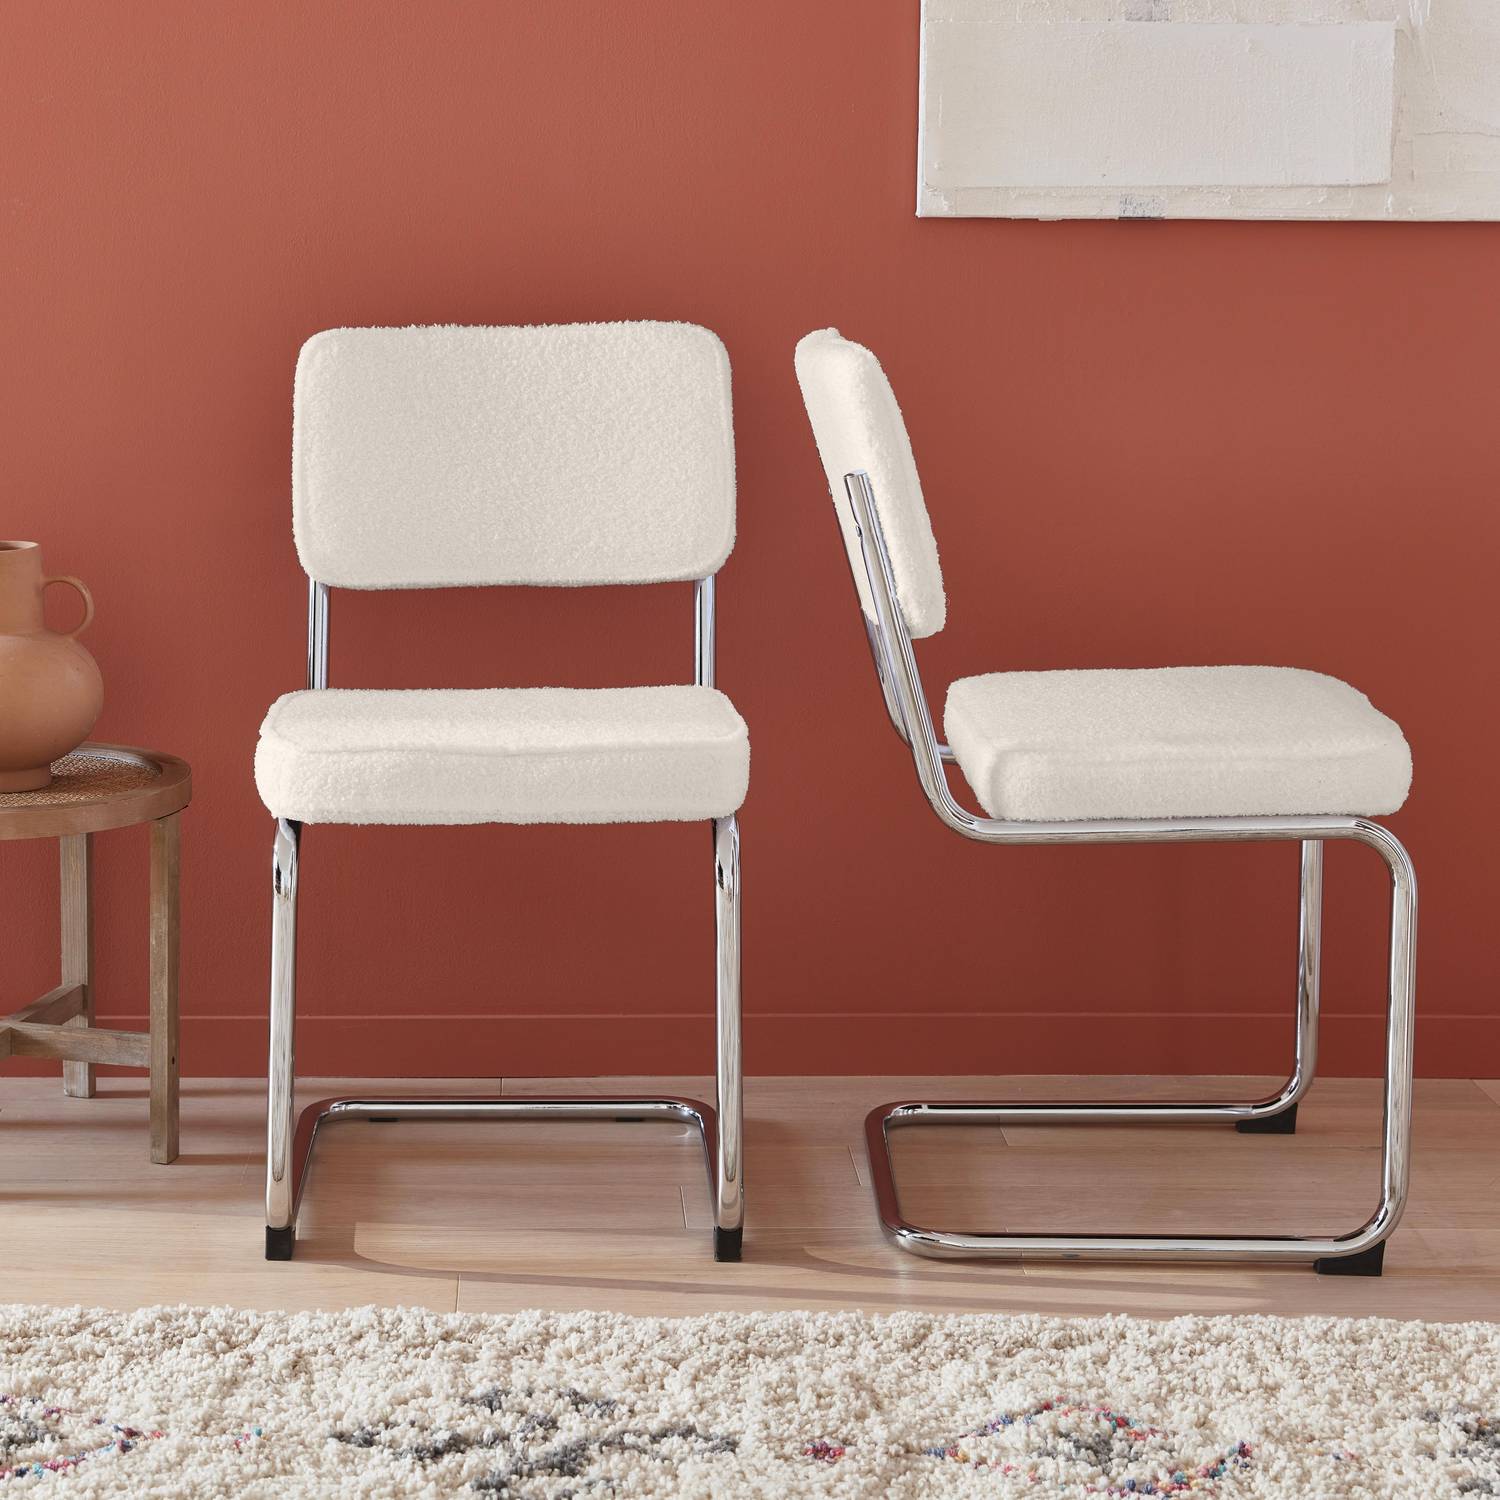 2 chaises cantilever - Maja - à bouclettes couleur crème , 46 x 54,5 x 84,5cm   Photo2